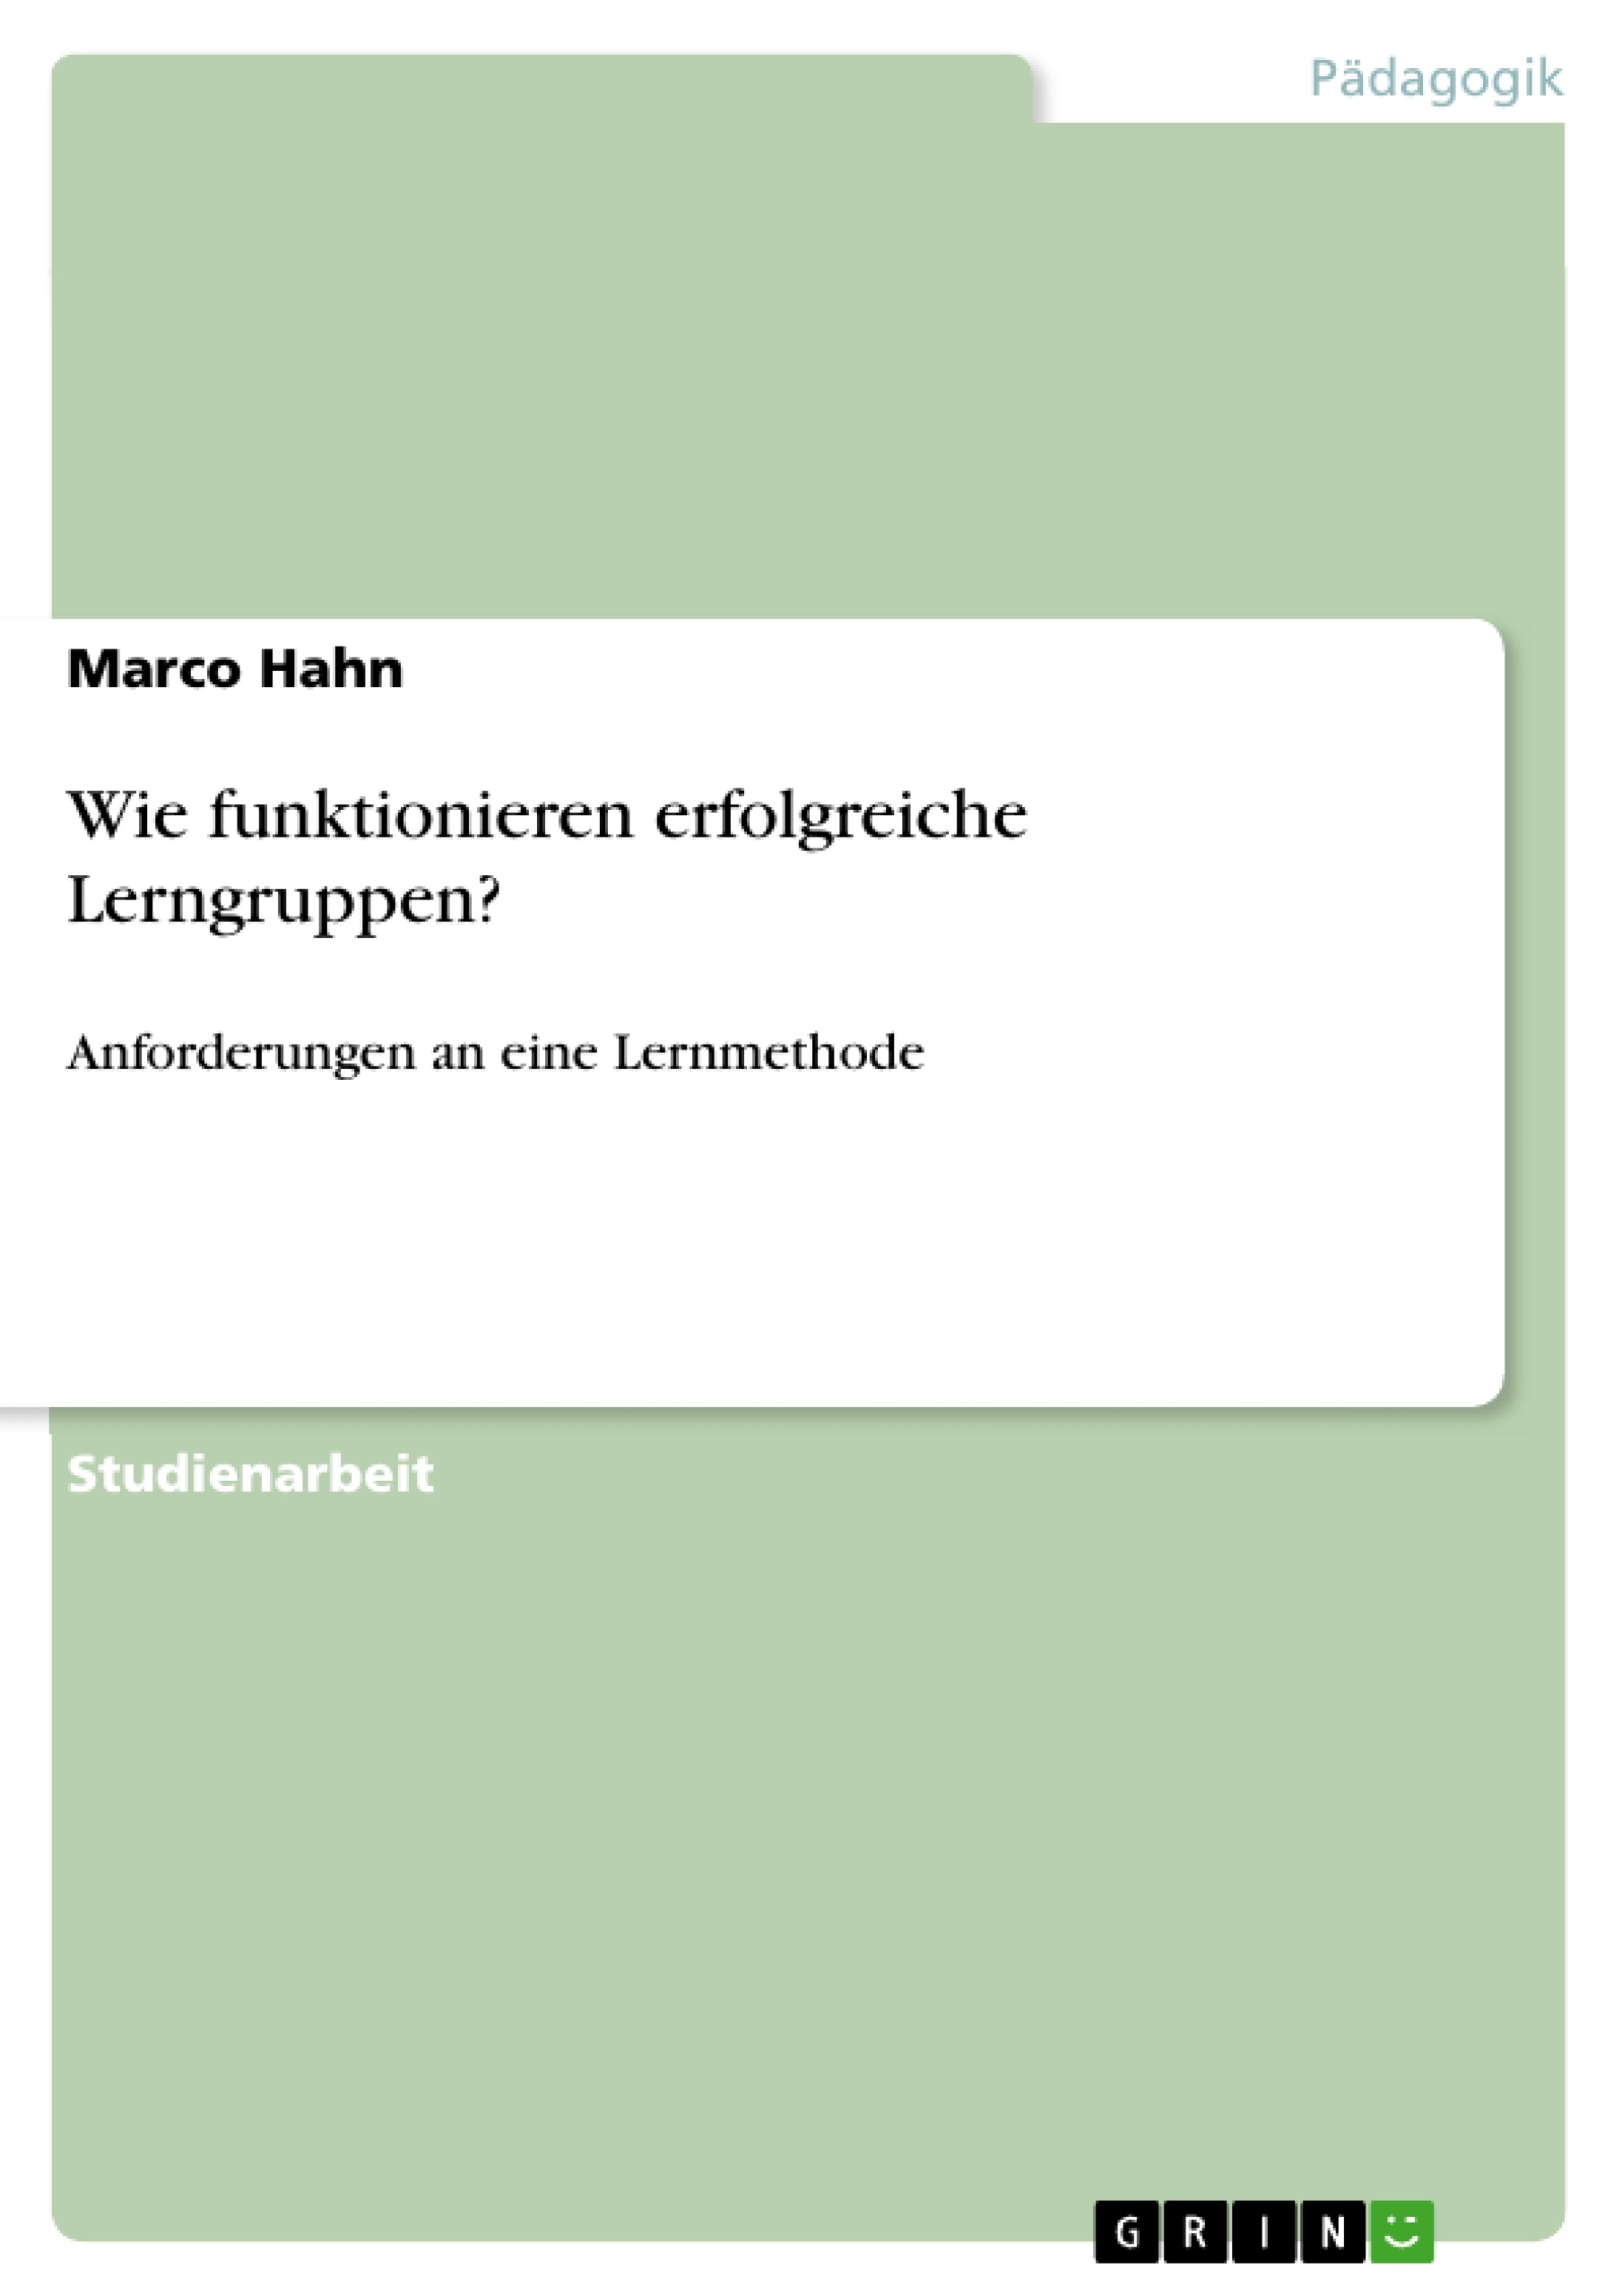 Title: Lerngruppen als Lernmethode / Anforderungen an erfolgreiche Lerngruppen